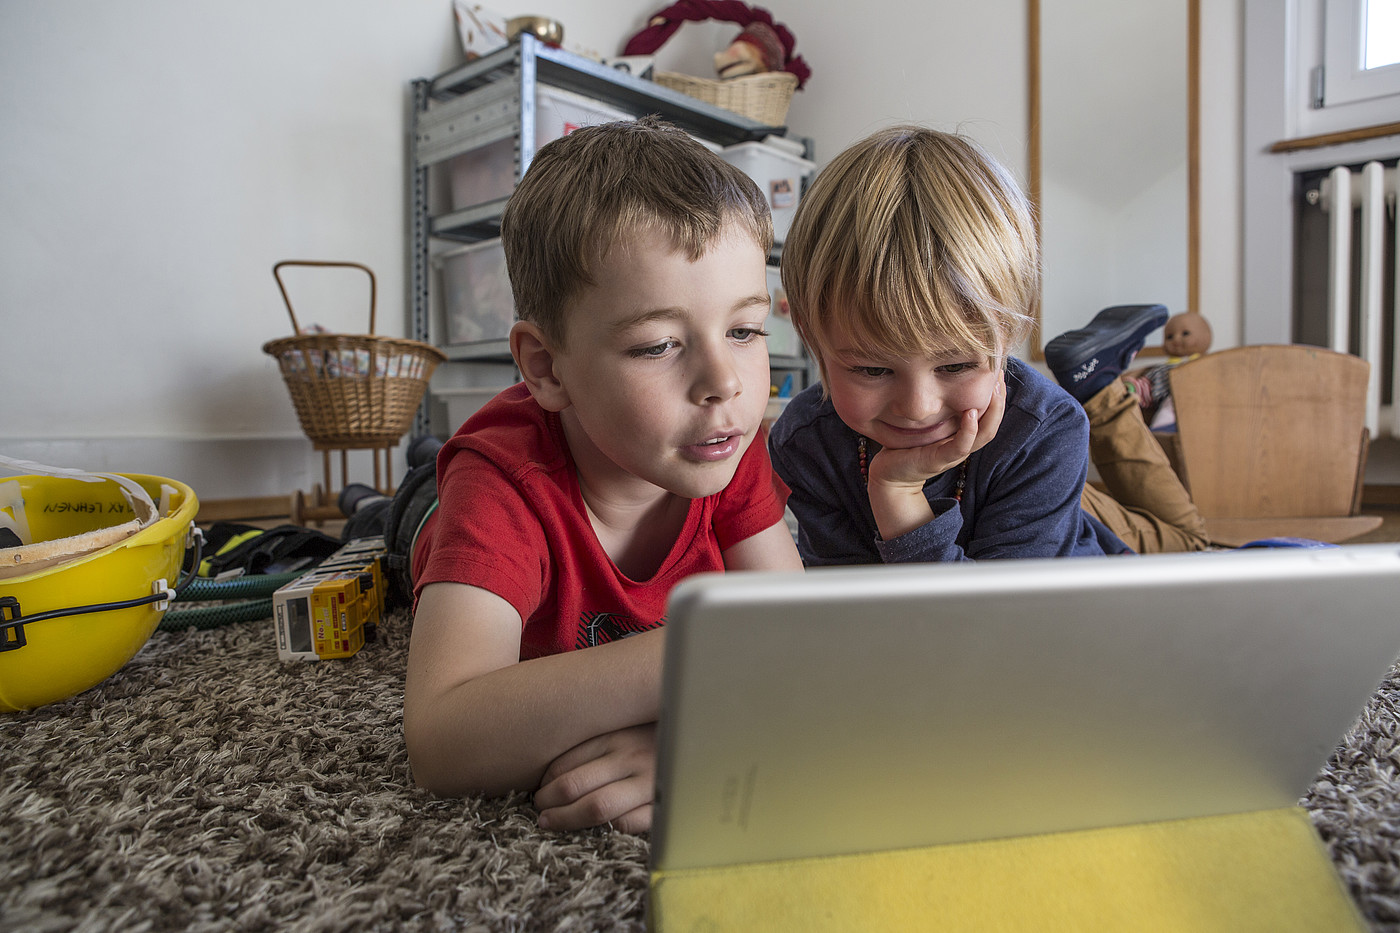 Deux enfants allongés sur le sol dans une chambre d'enfant regardant une tablette.